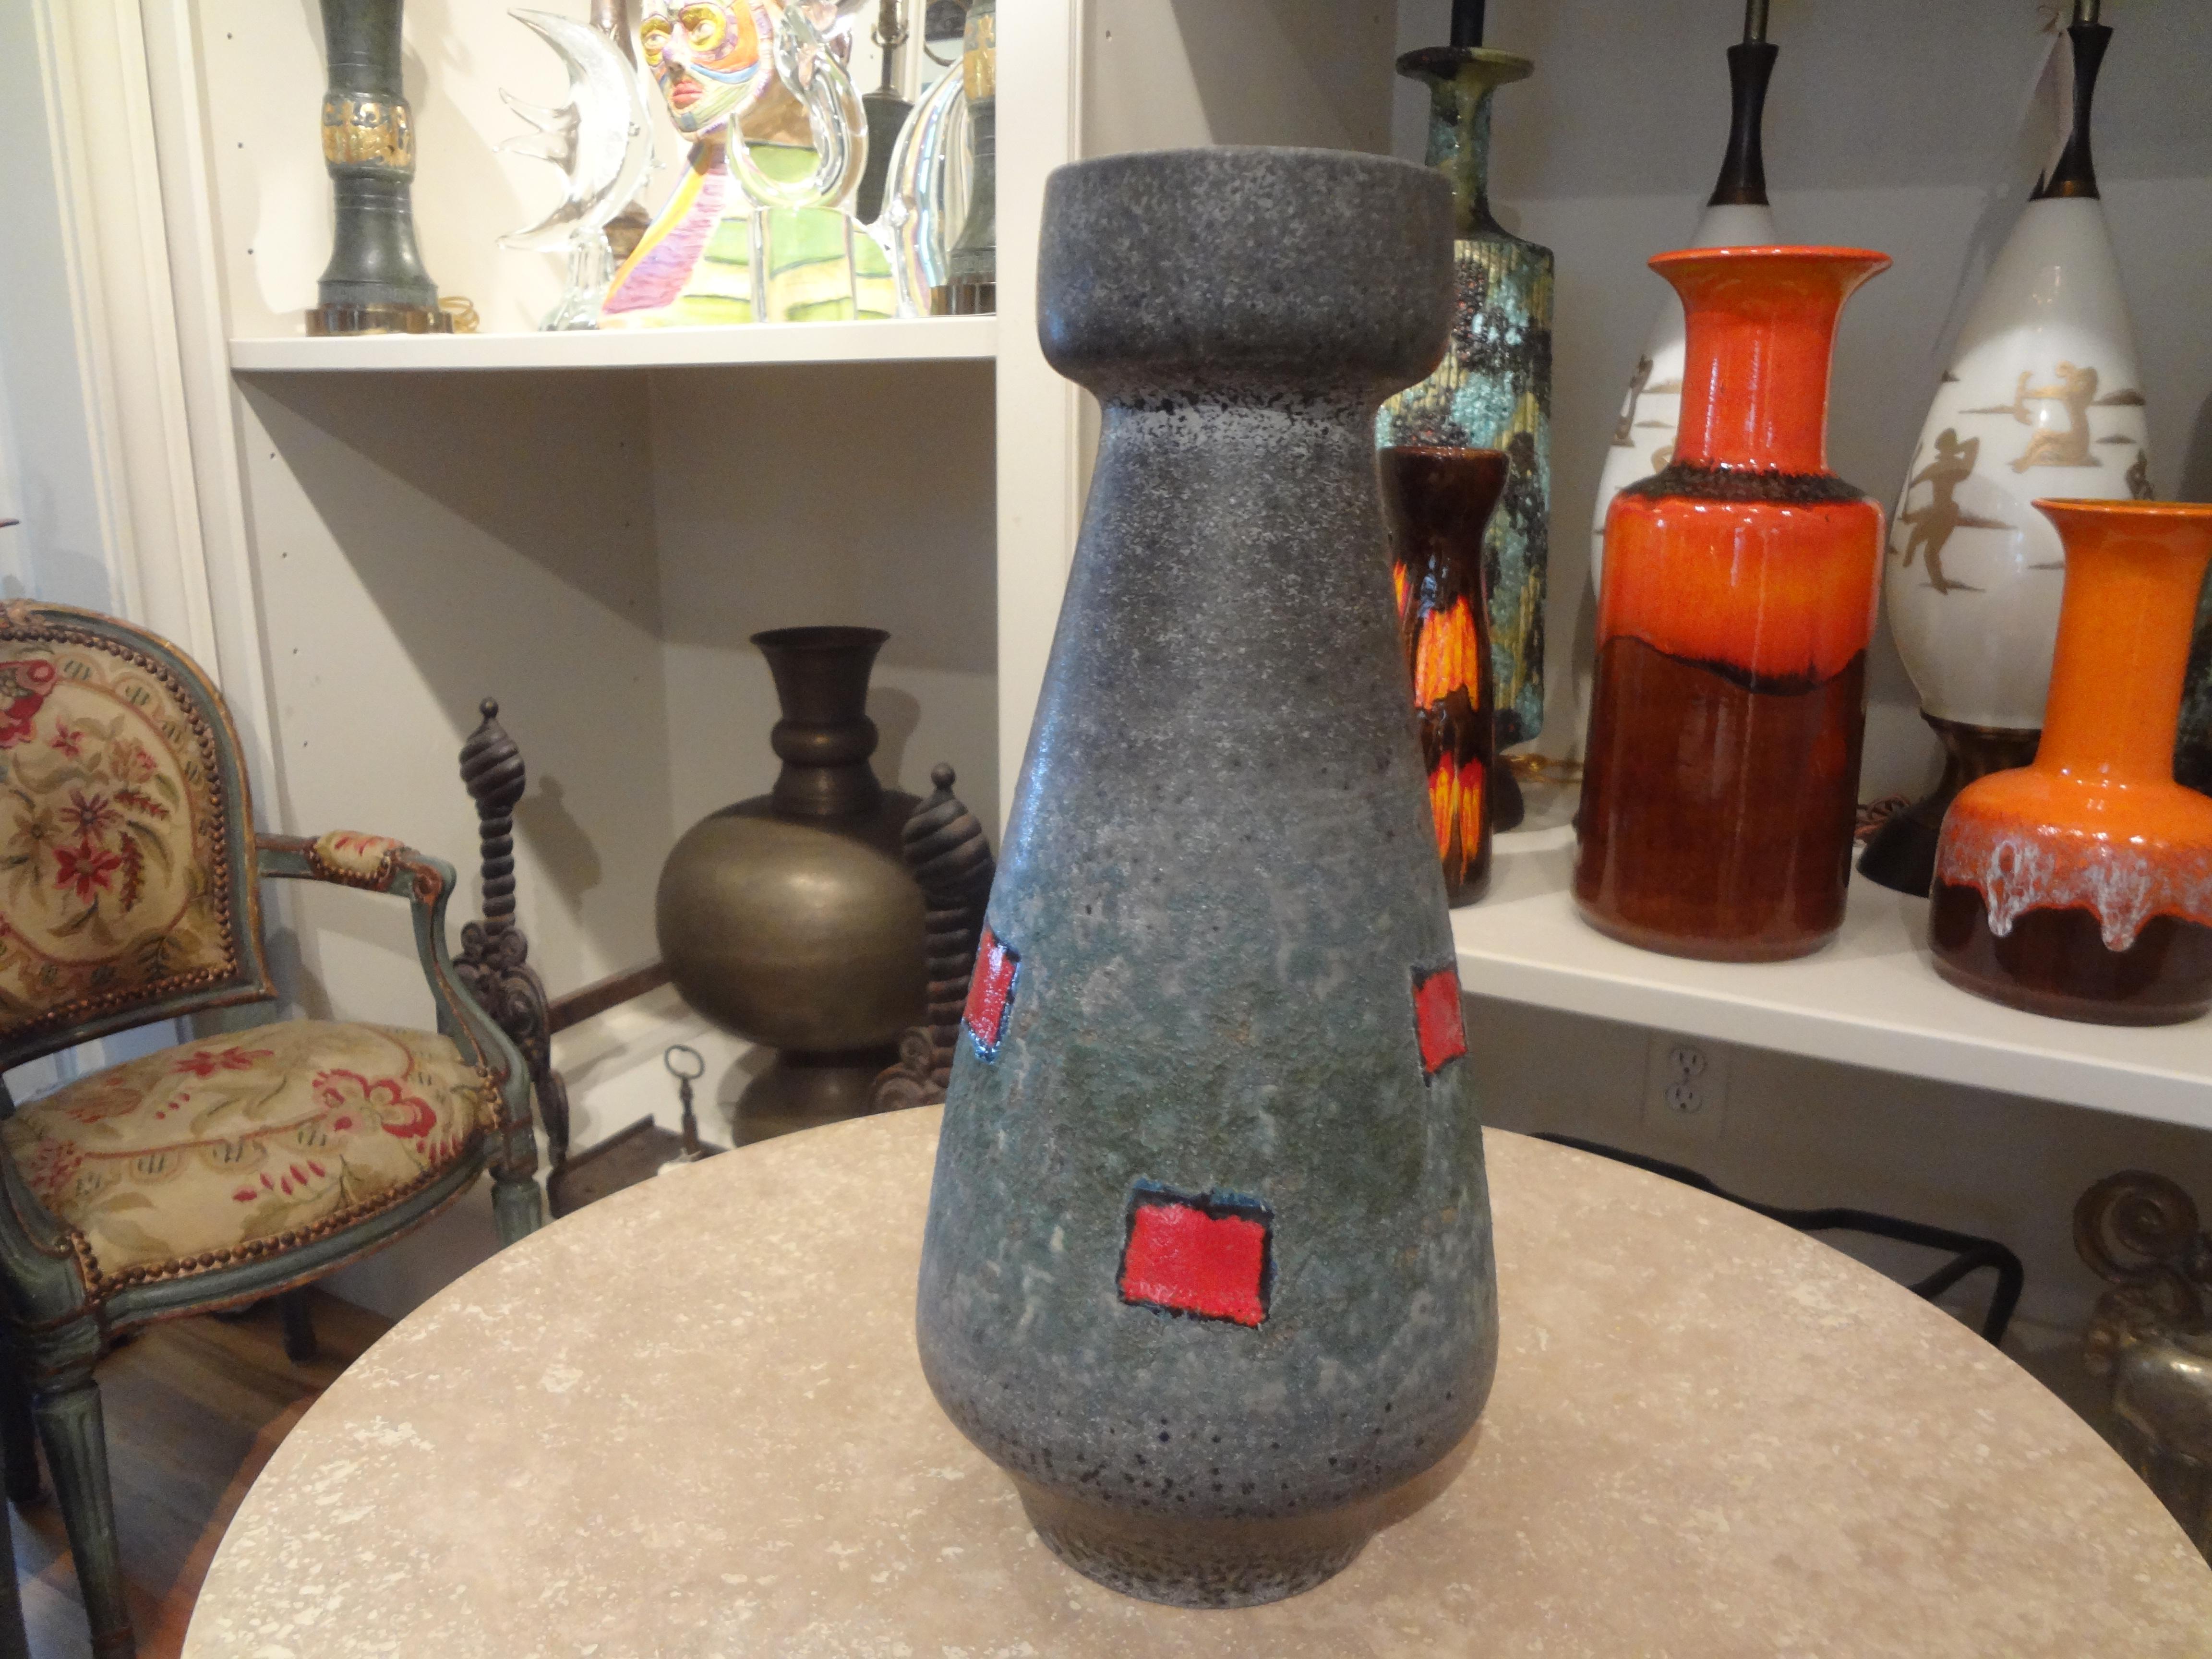 Westdeutsche glasierte Keramikvase. Diese hübsche Vase hat ein sehr interessantes geometrisches Muster  mit schönen Farben und matter Glasur. Nur eines aus unserer großen Sammlung!